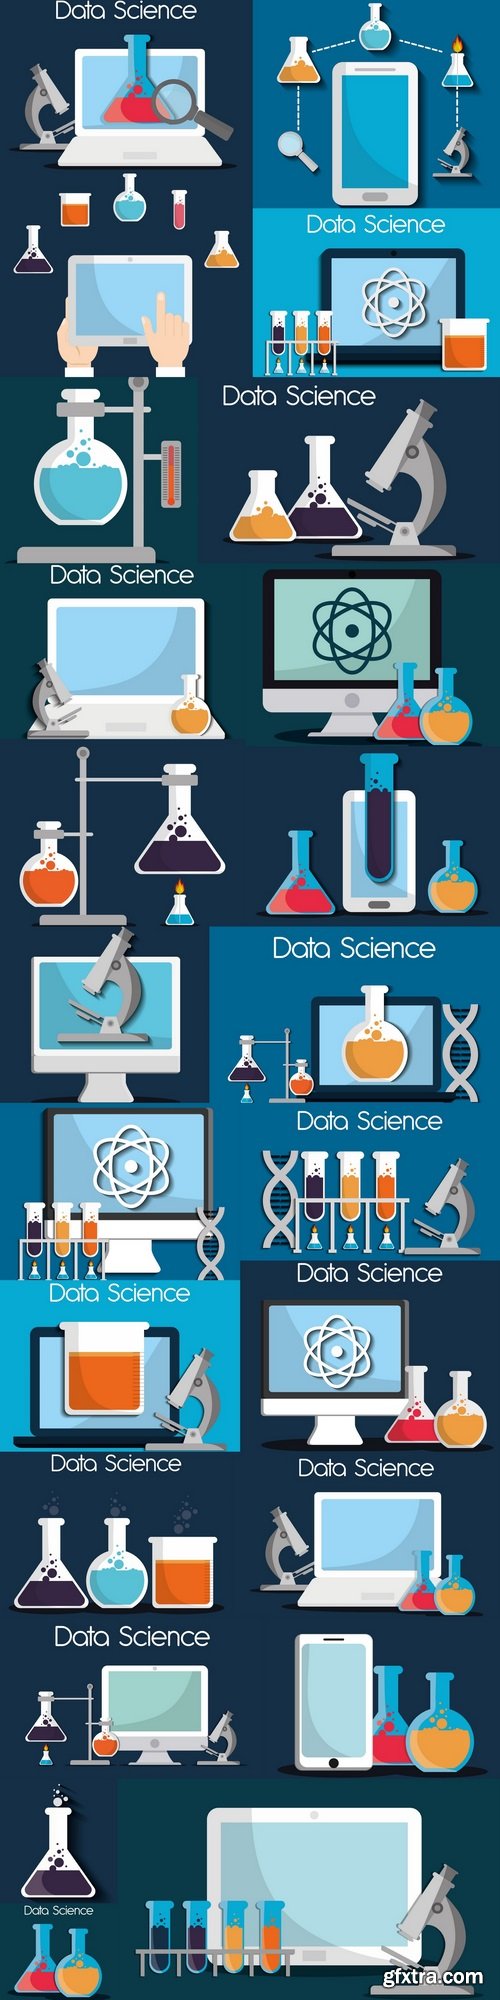 Data Science design